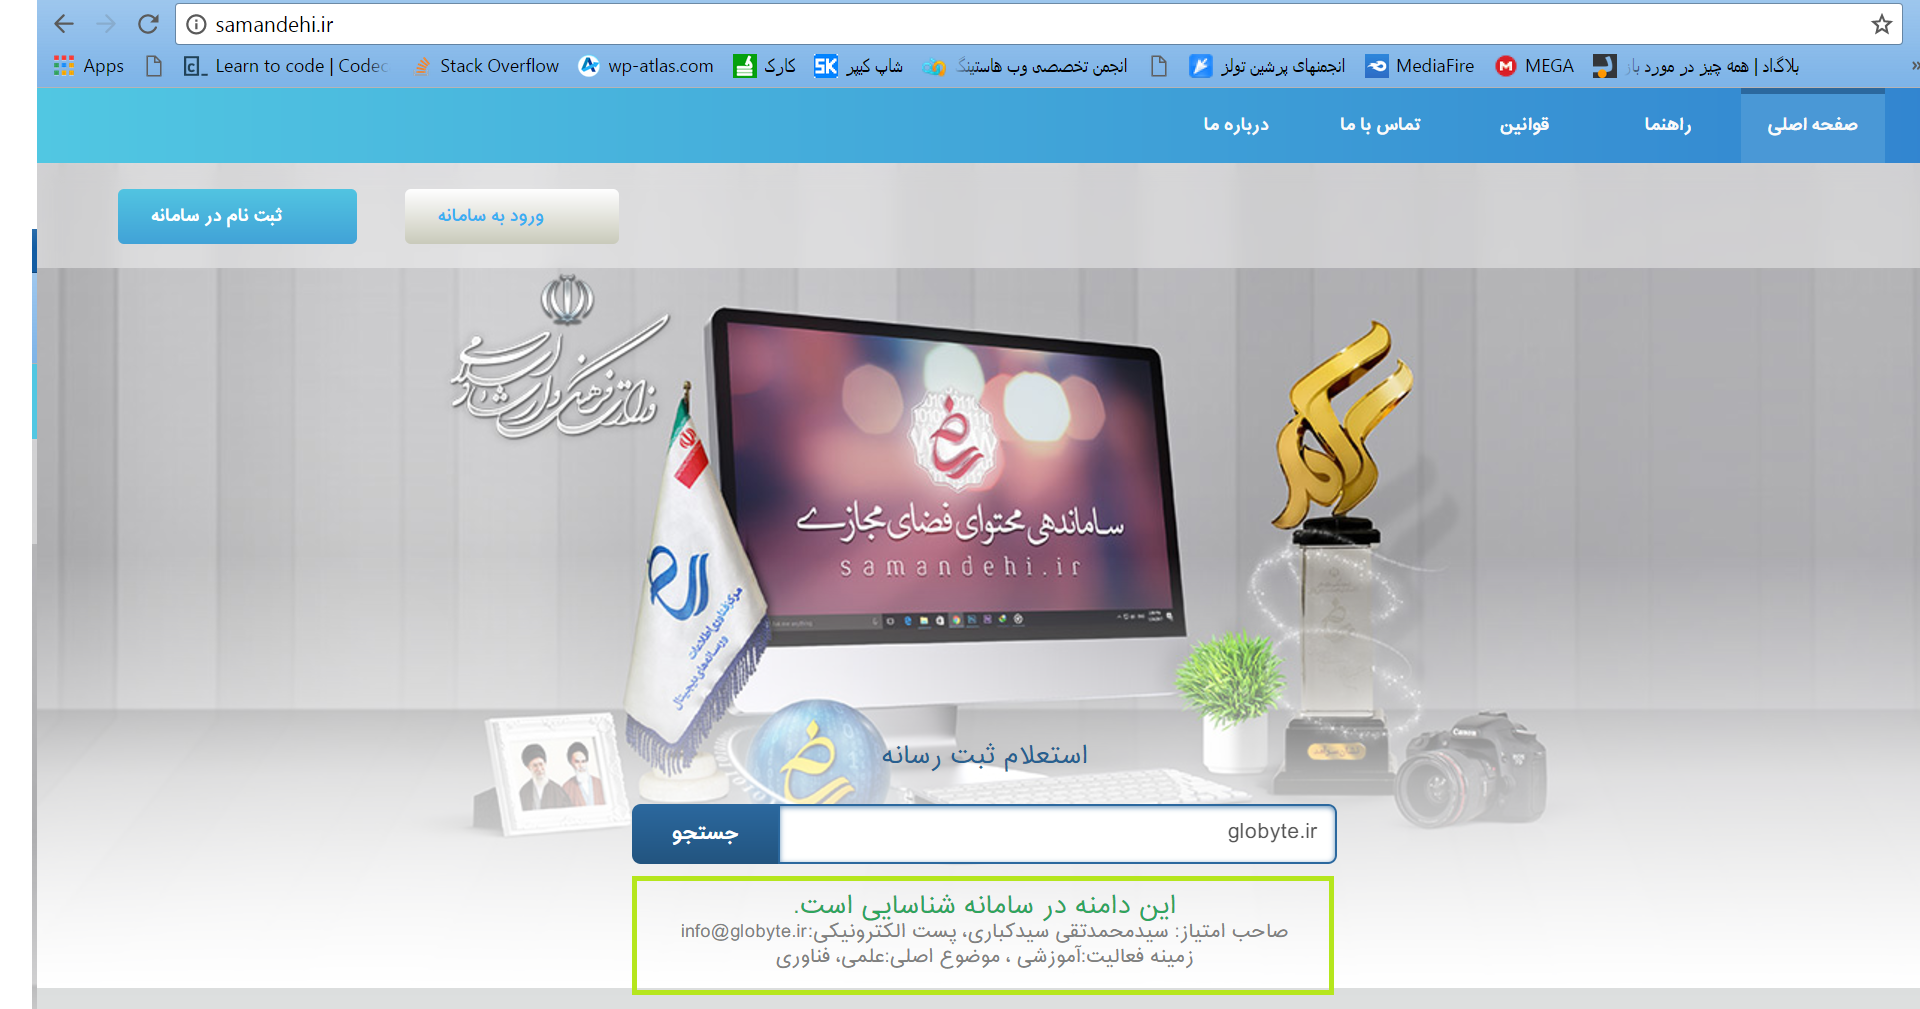 تاییدیه ستاد ساماندهی وب سایت های اینترنتی وزارت ارشاد